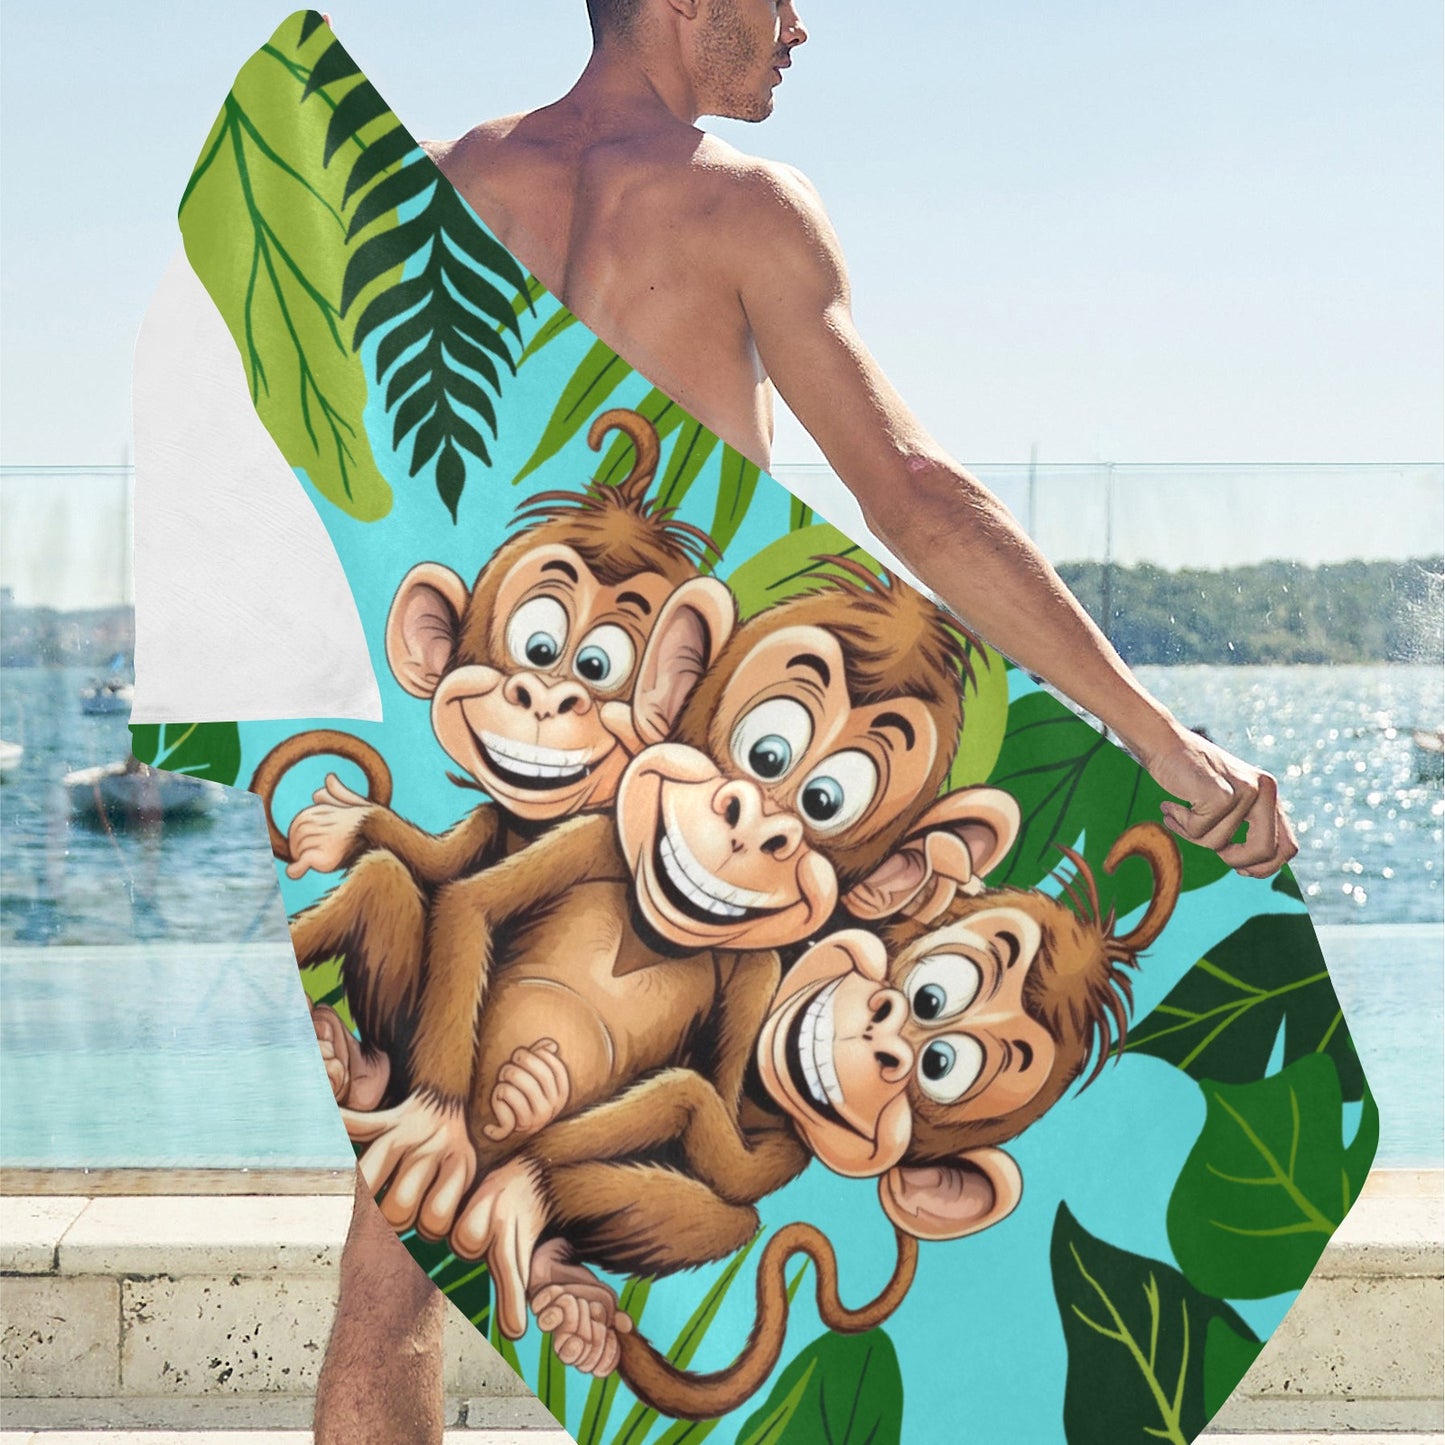 Three Monkeys Beach Towel 31.5"x 71" Inkedjoy